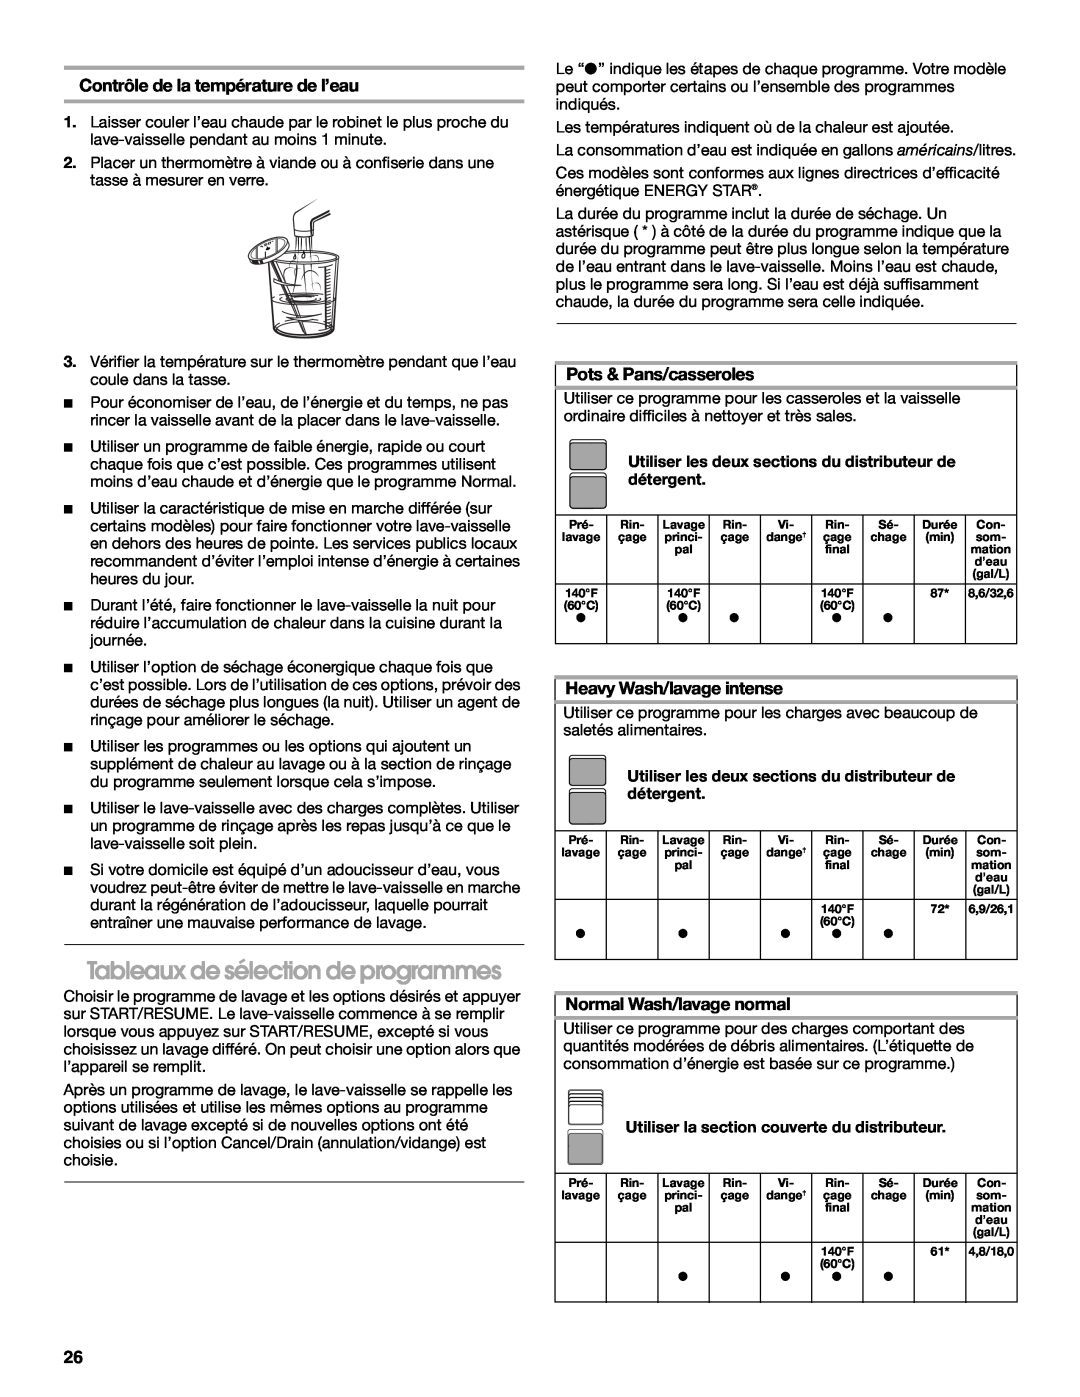 Estate TUD6900 manual Tableaux de sélection de programmes, Contrôle de la température de l’eau, Pots & Pans/casseroles 